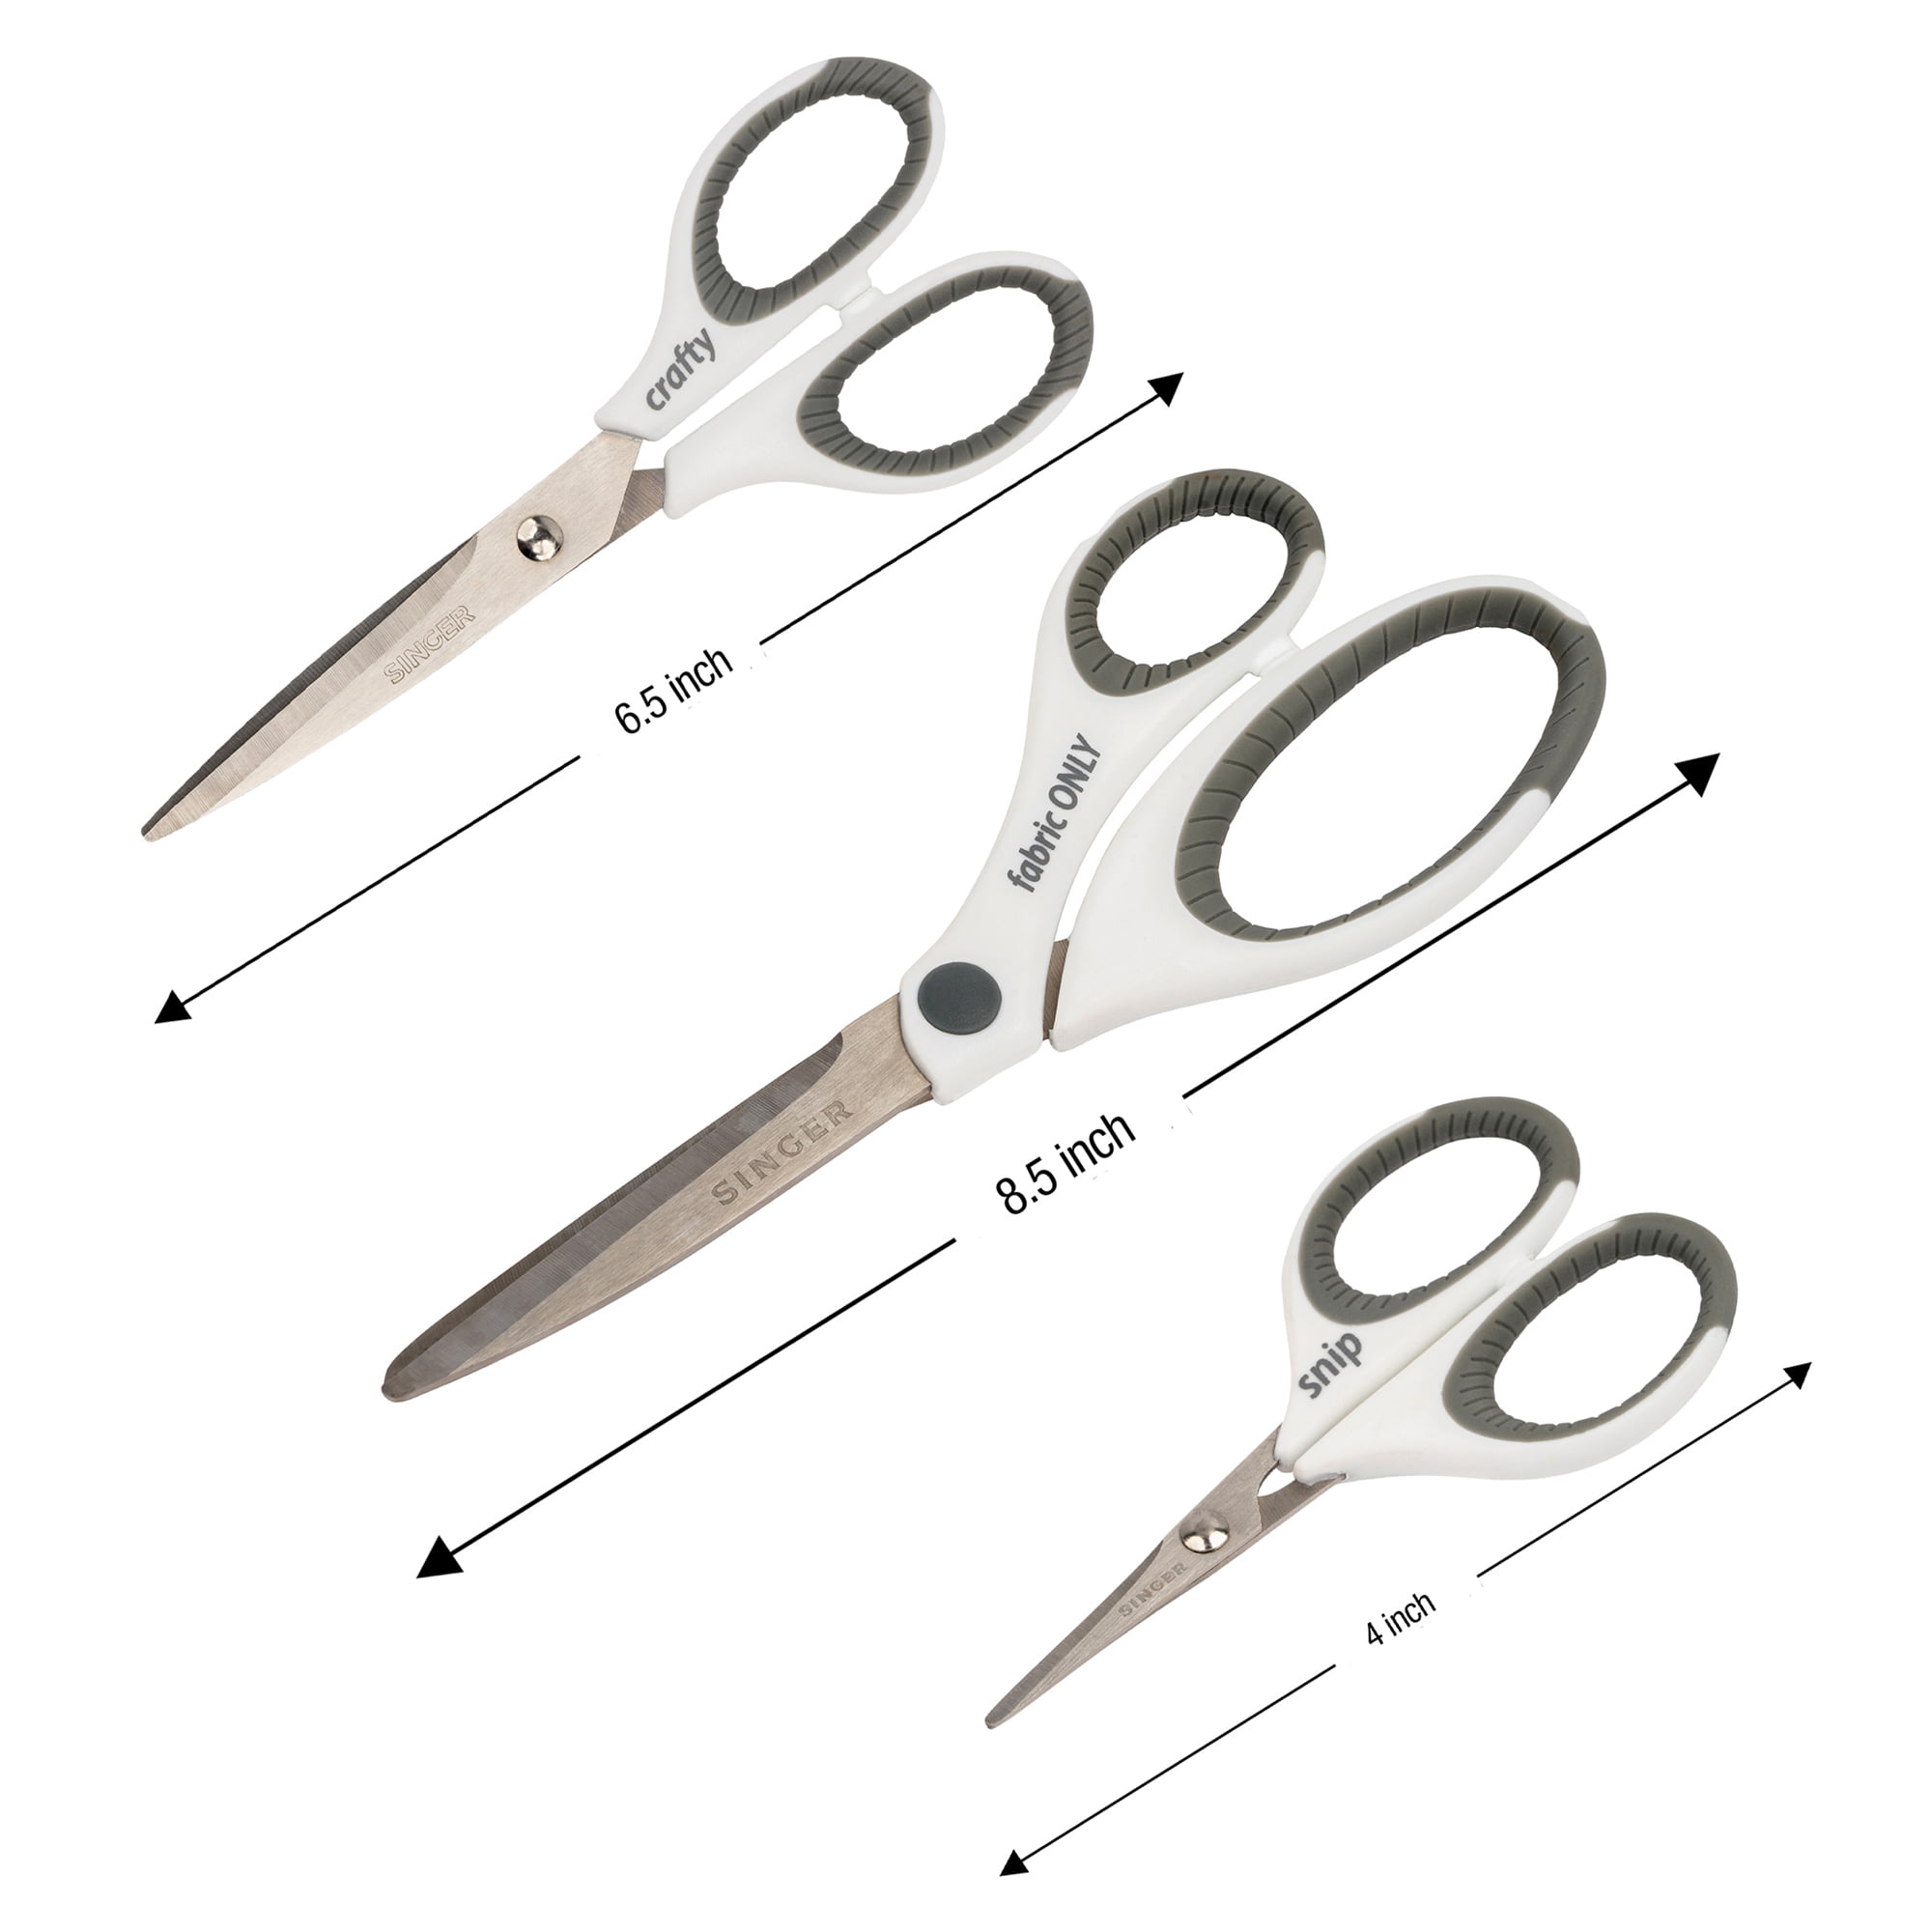 8-1/2 Left Hand Singer Scissors with Comfort Handle, Serrated blades